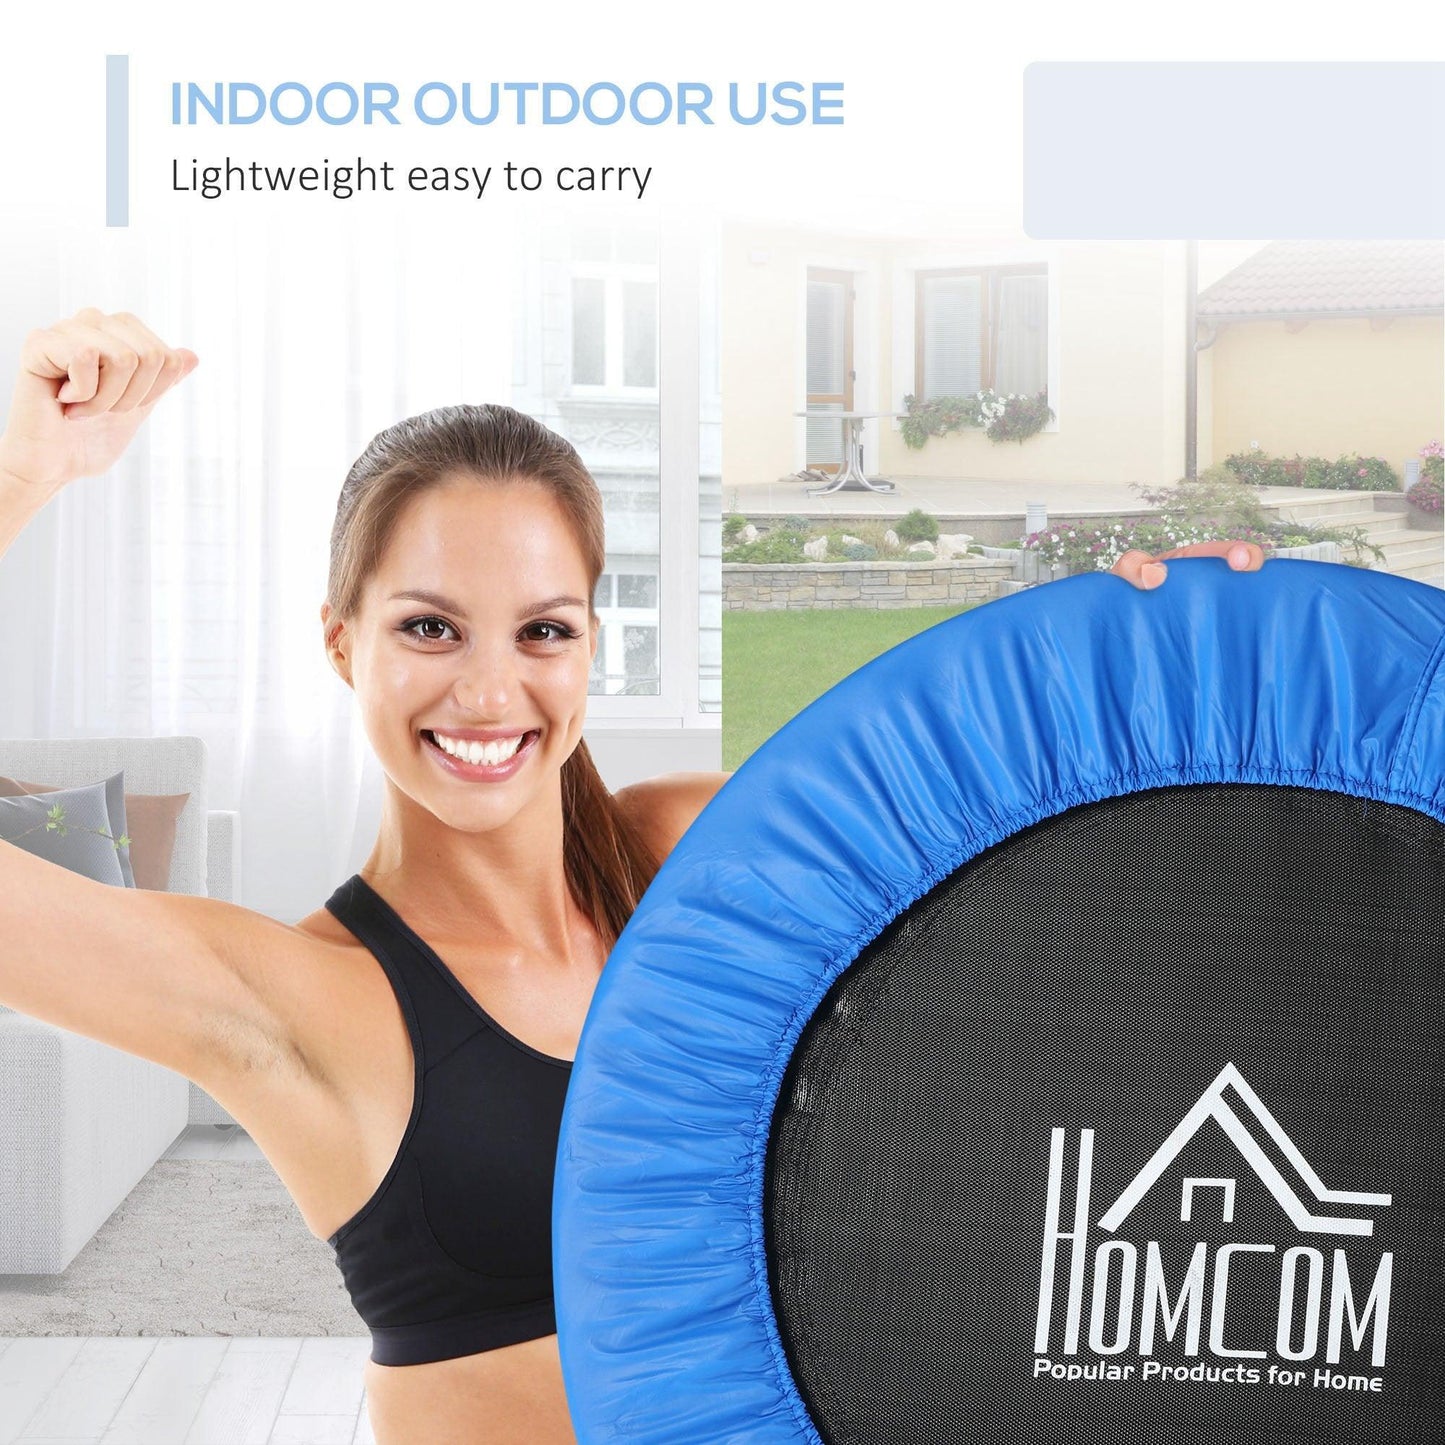 HOMCOM 96cm Foldable Mini Trampoline – Home Gym Exercise, Blue/Black - ALL4U RETAILER LTD